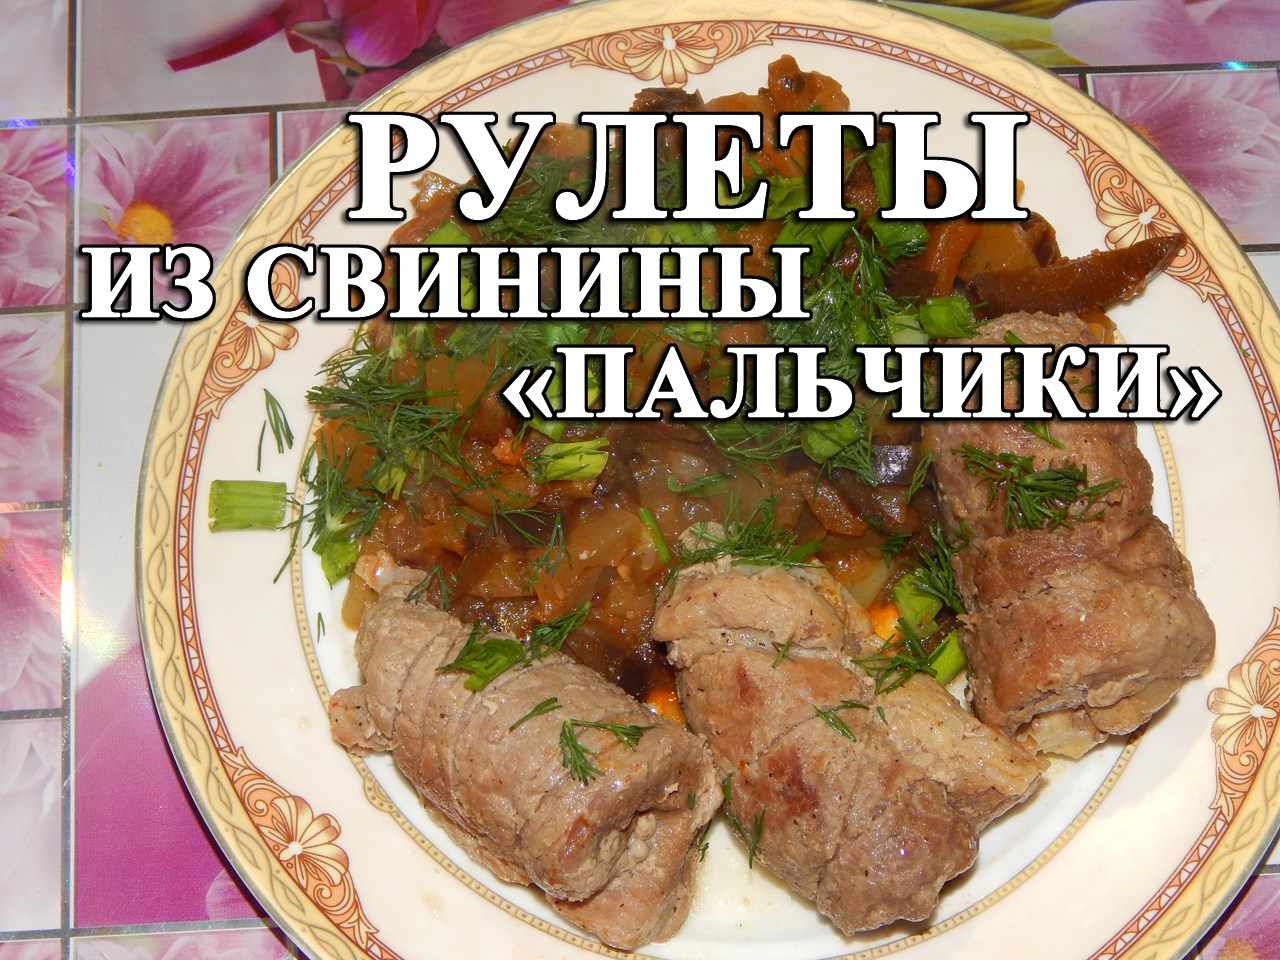 12774 Котлеты по-киевски классический рецепт - Простые рецепты - женский сайт